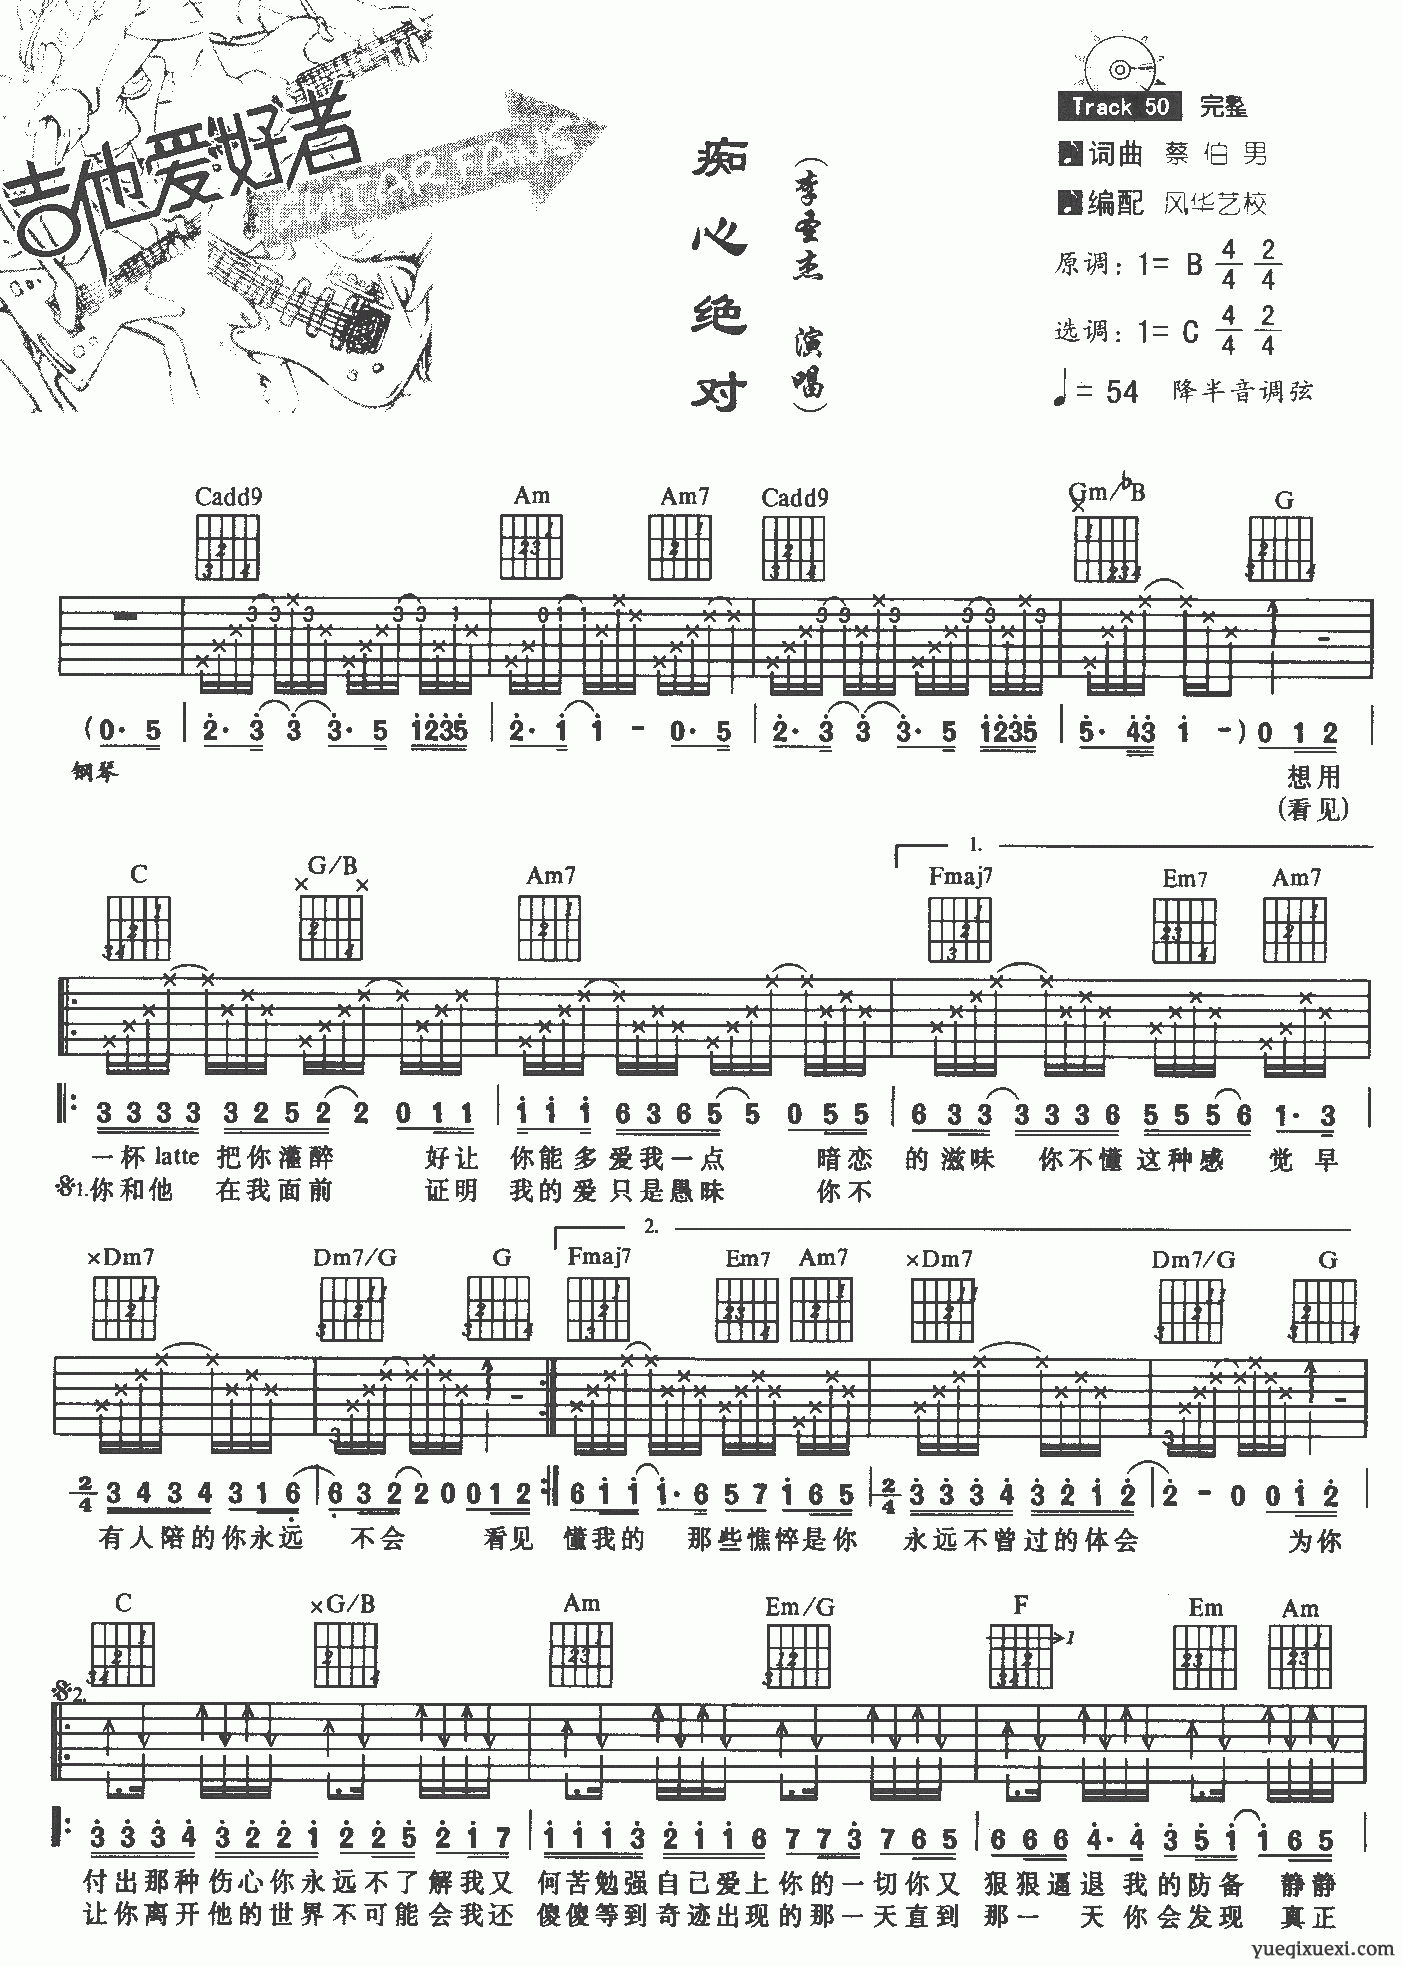 李圣杰成名曲吉他谱《痴心绝对》-吉他曲谱 - 乐器学习网